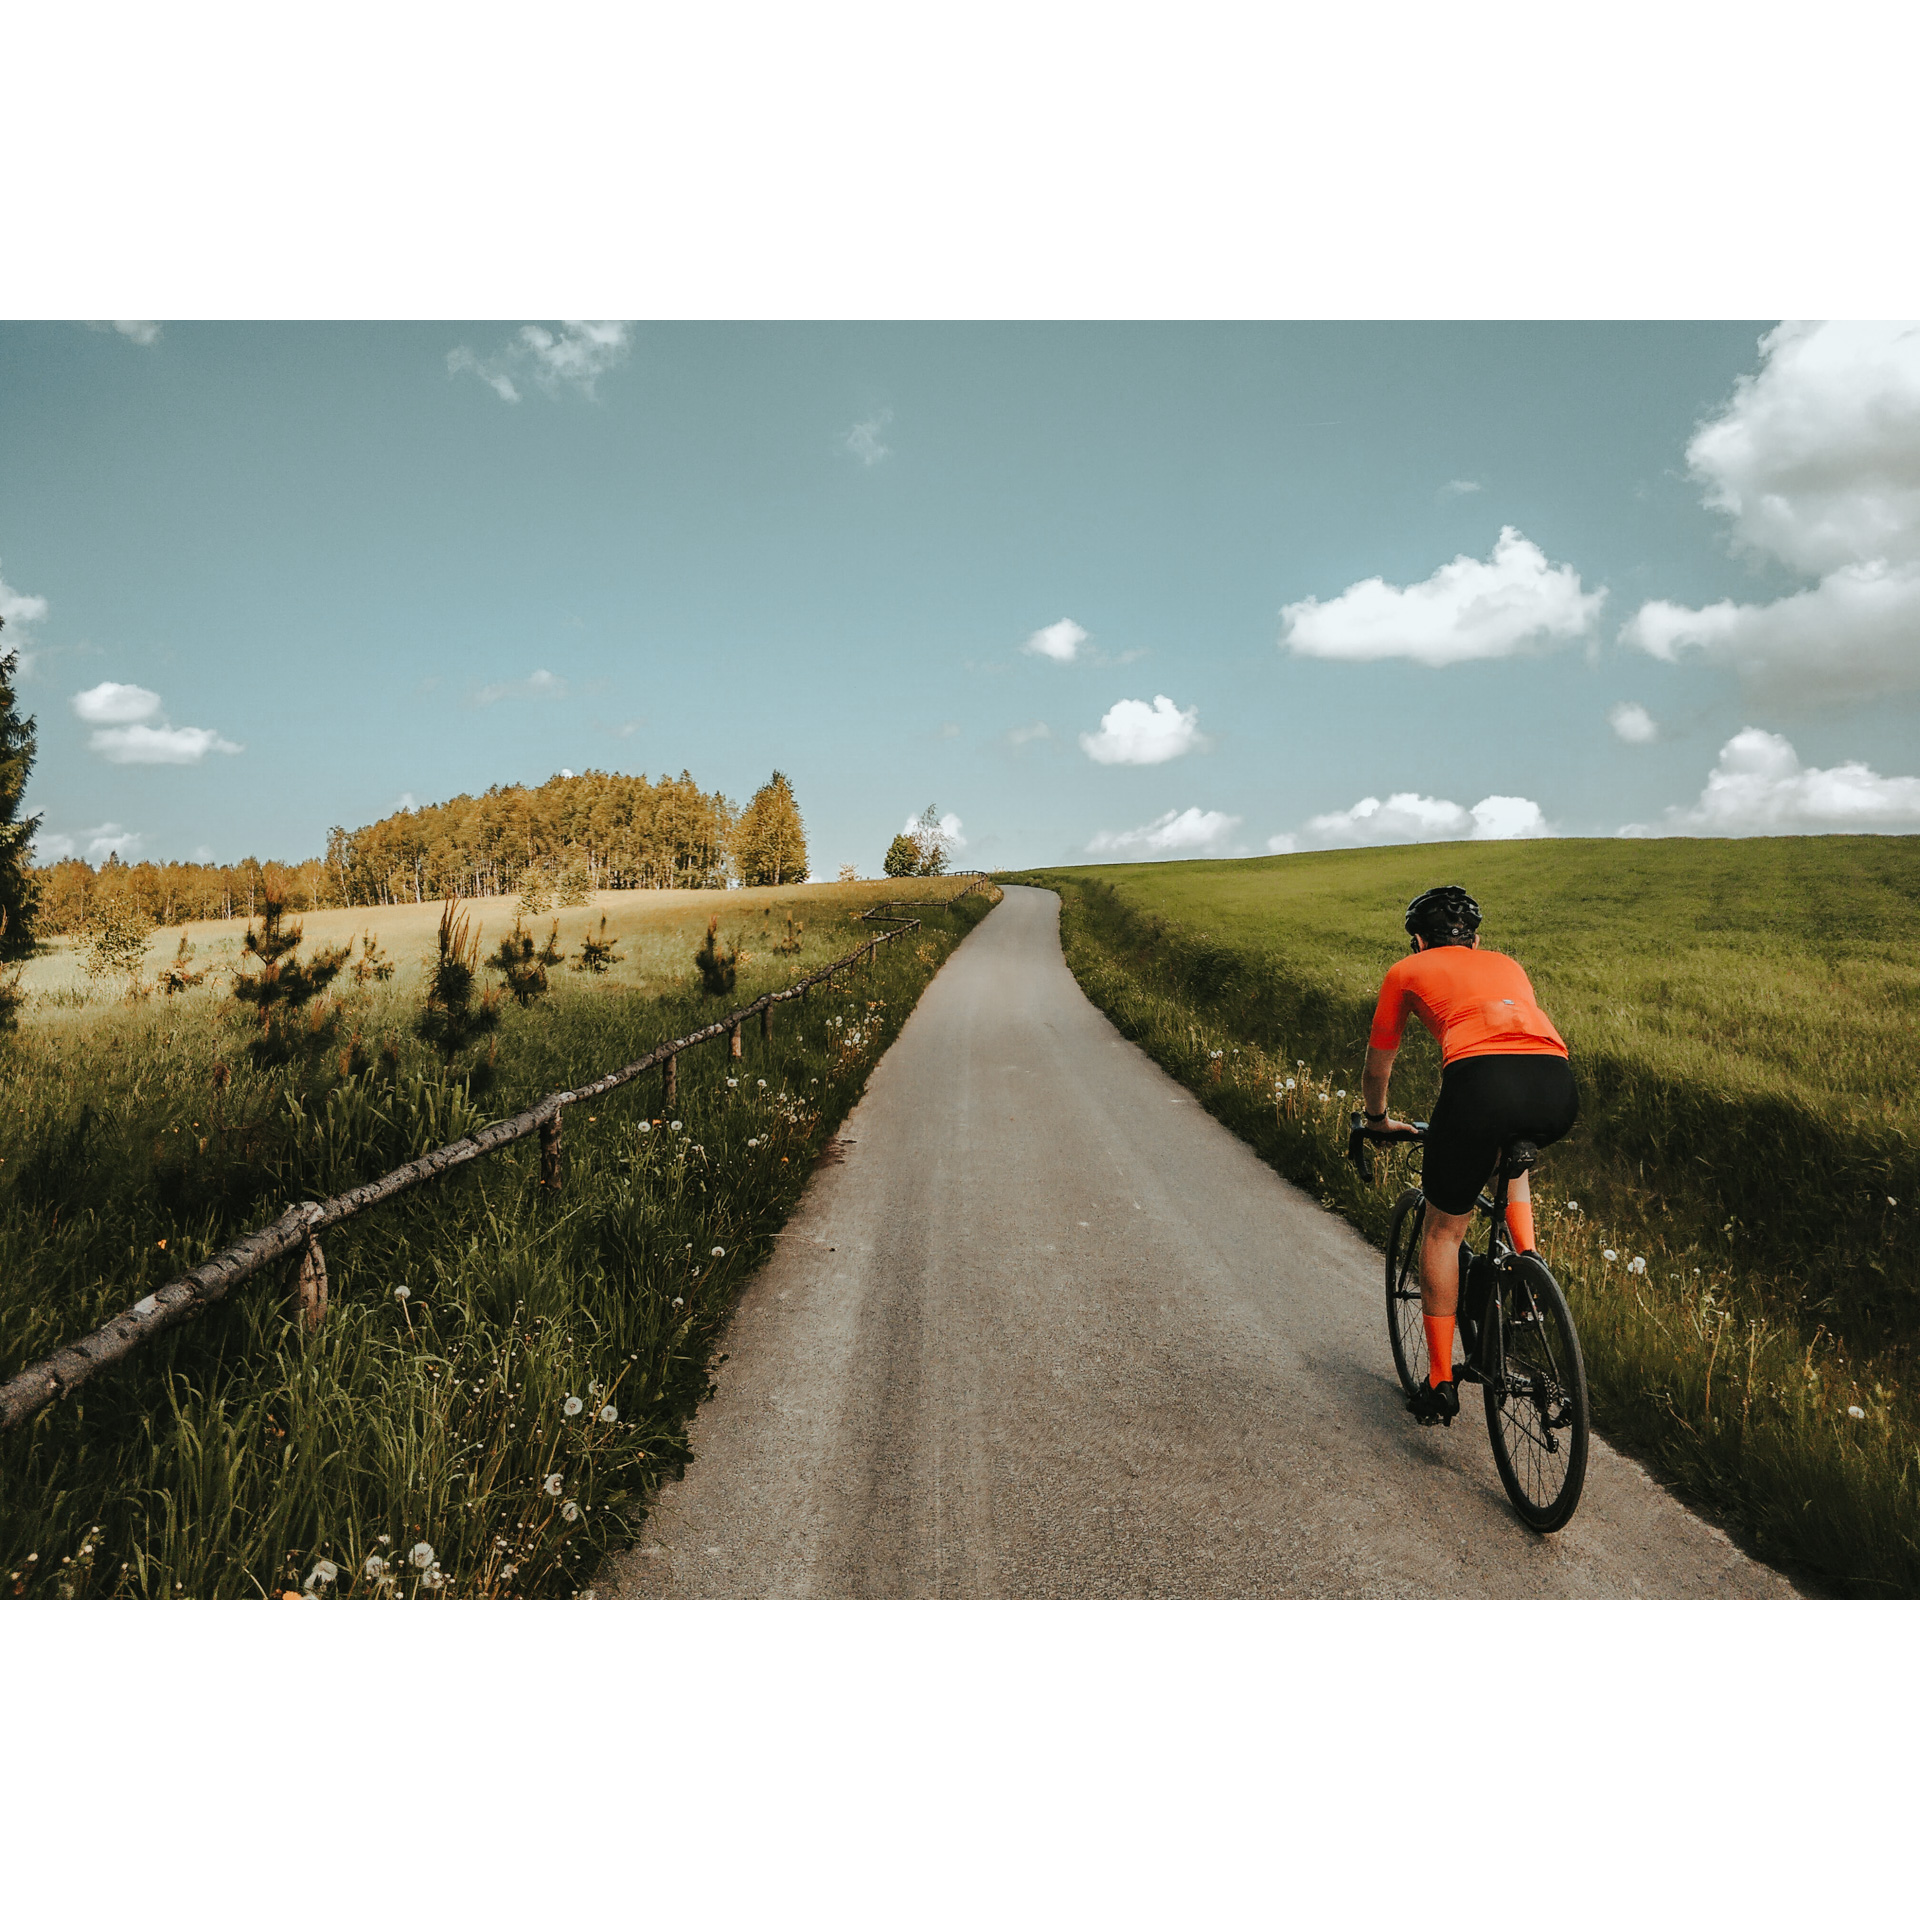 Rowerzysta w pomarańczowej jadący po szutrowej drodze pomiędzy wysoką trawą odgrodzoną po lewej stronie płotem 